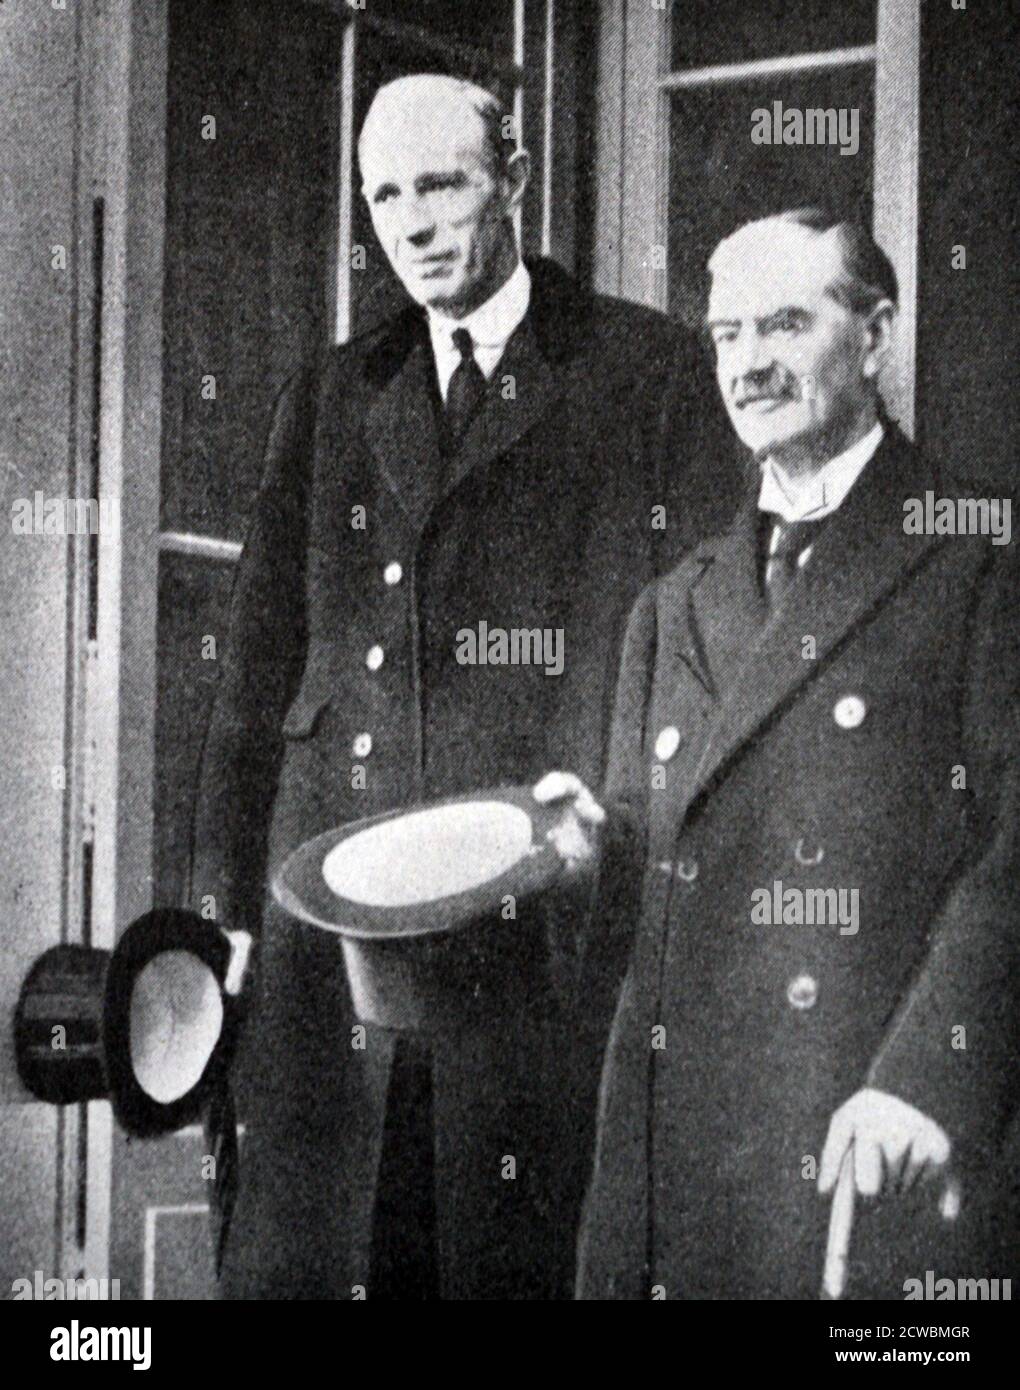 Fotografia in bianco e nero di Neville Chamberlain (1869-1940), primo ministro britannico, e Edward Wood, Lord Halifax (1881-1959) all'inizio della crisi ceca. Foto Stock